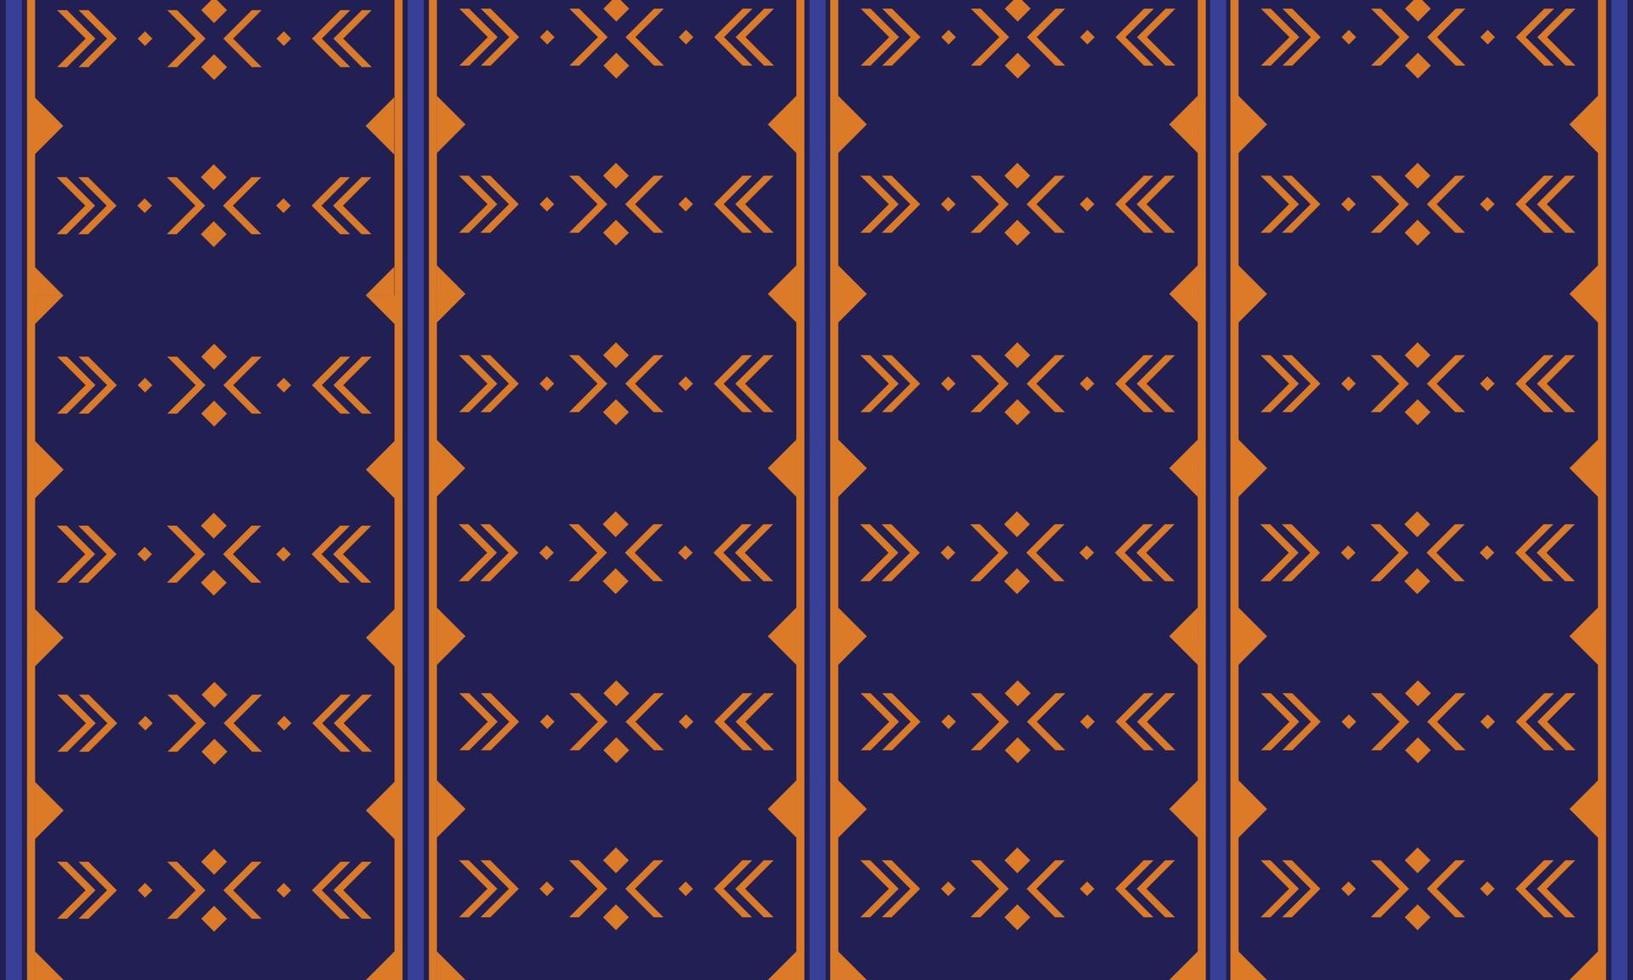 fondos de estilo étnico para estampados de tela, alfombras y mantas. diseño de patrones geométricos temas retro y vintage para fondos de pantalla vector